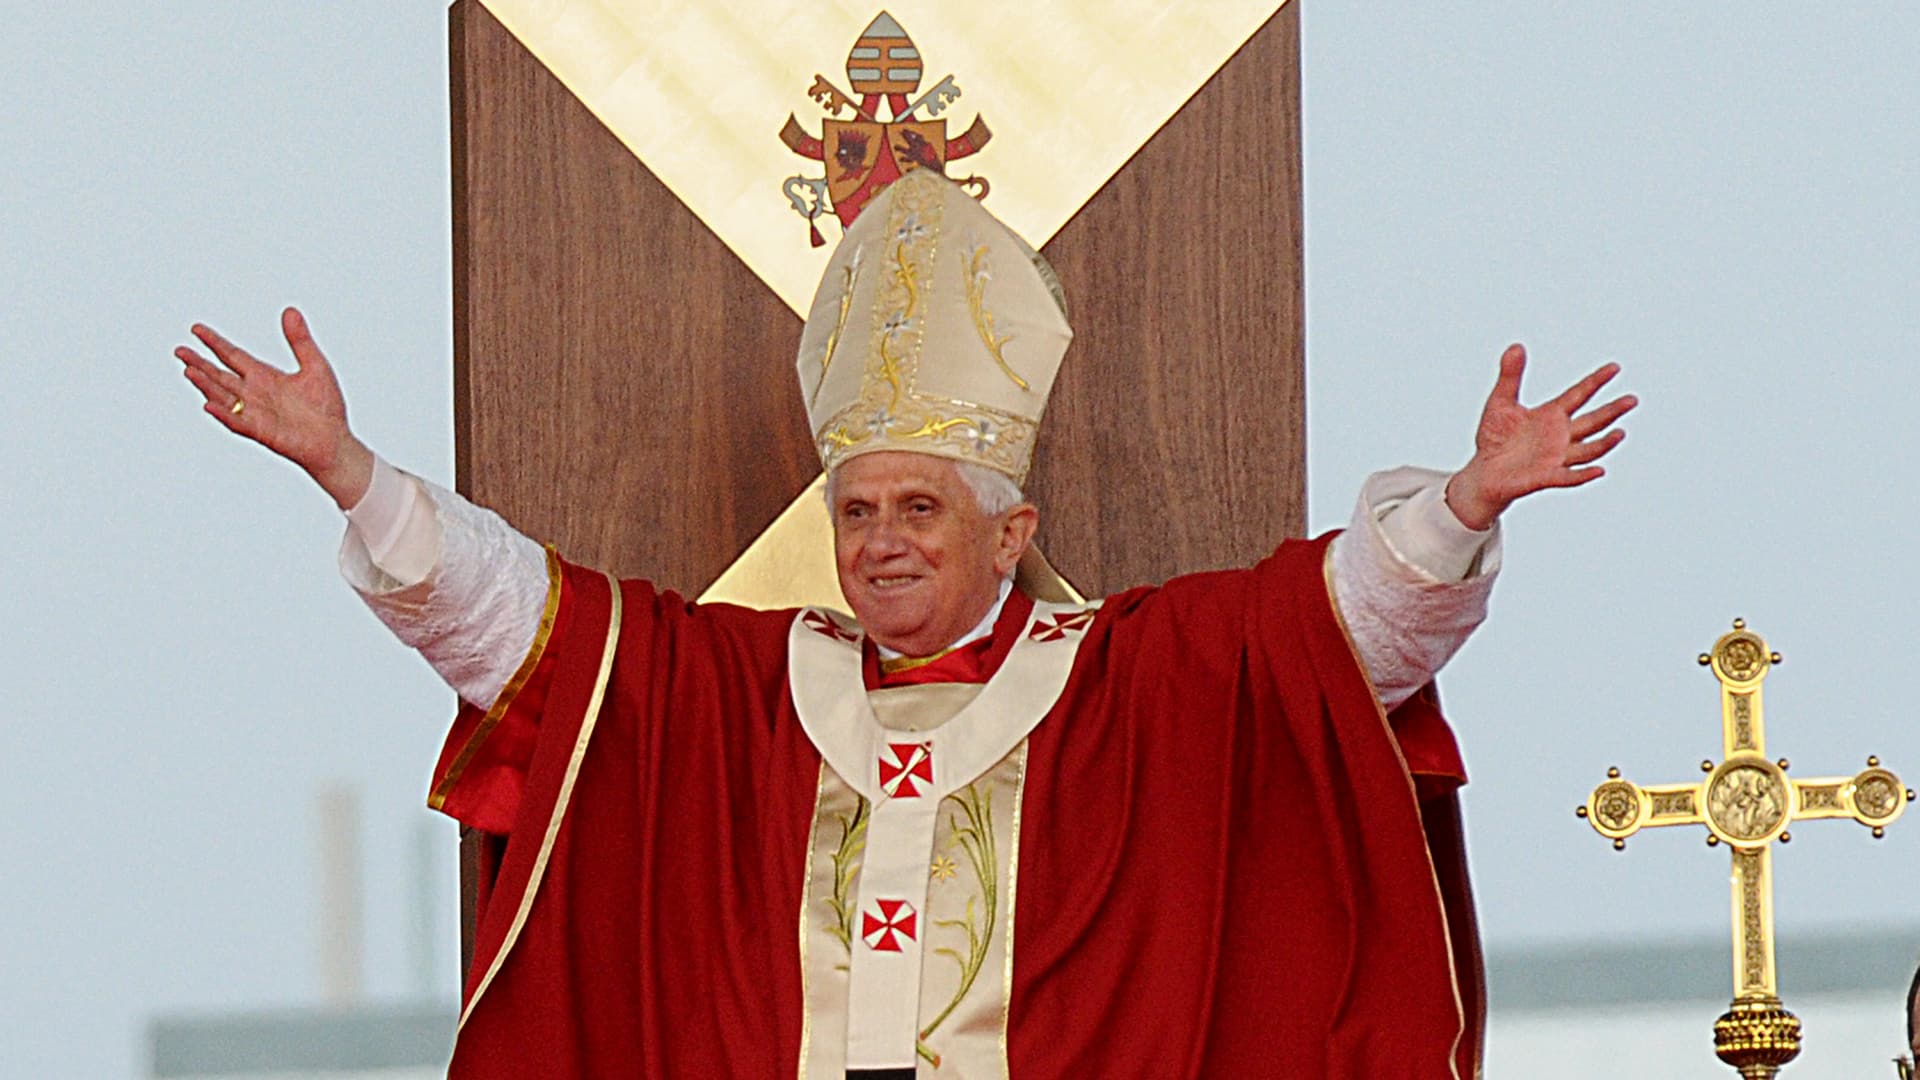 Portrait de Benoît XVI lorsqu'il était pape